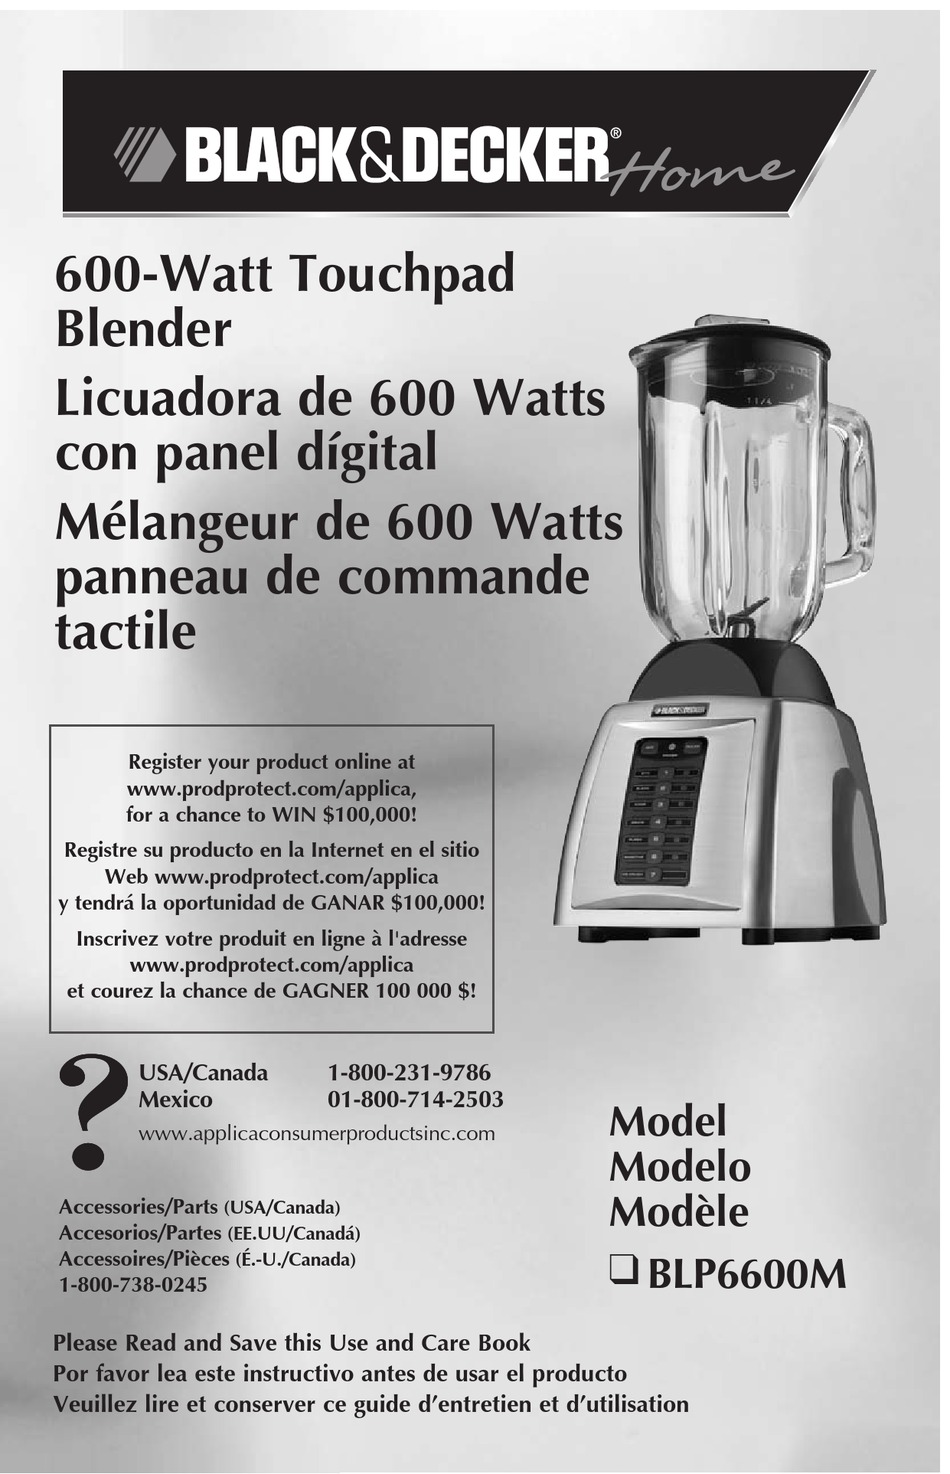 Black & Decker BL2020S 10-Speed 5-Cup Blender for sale online